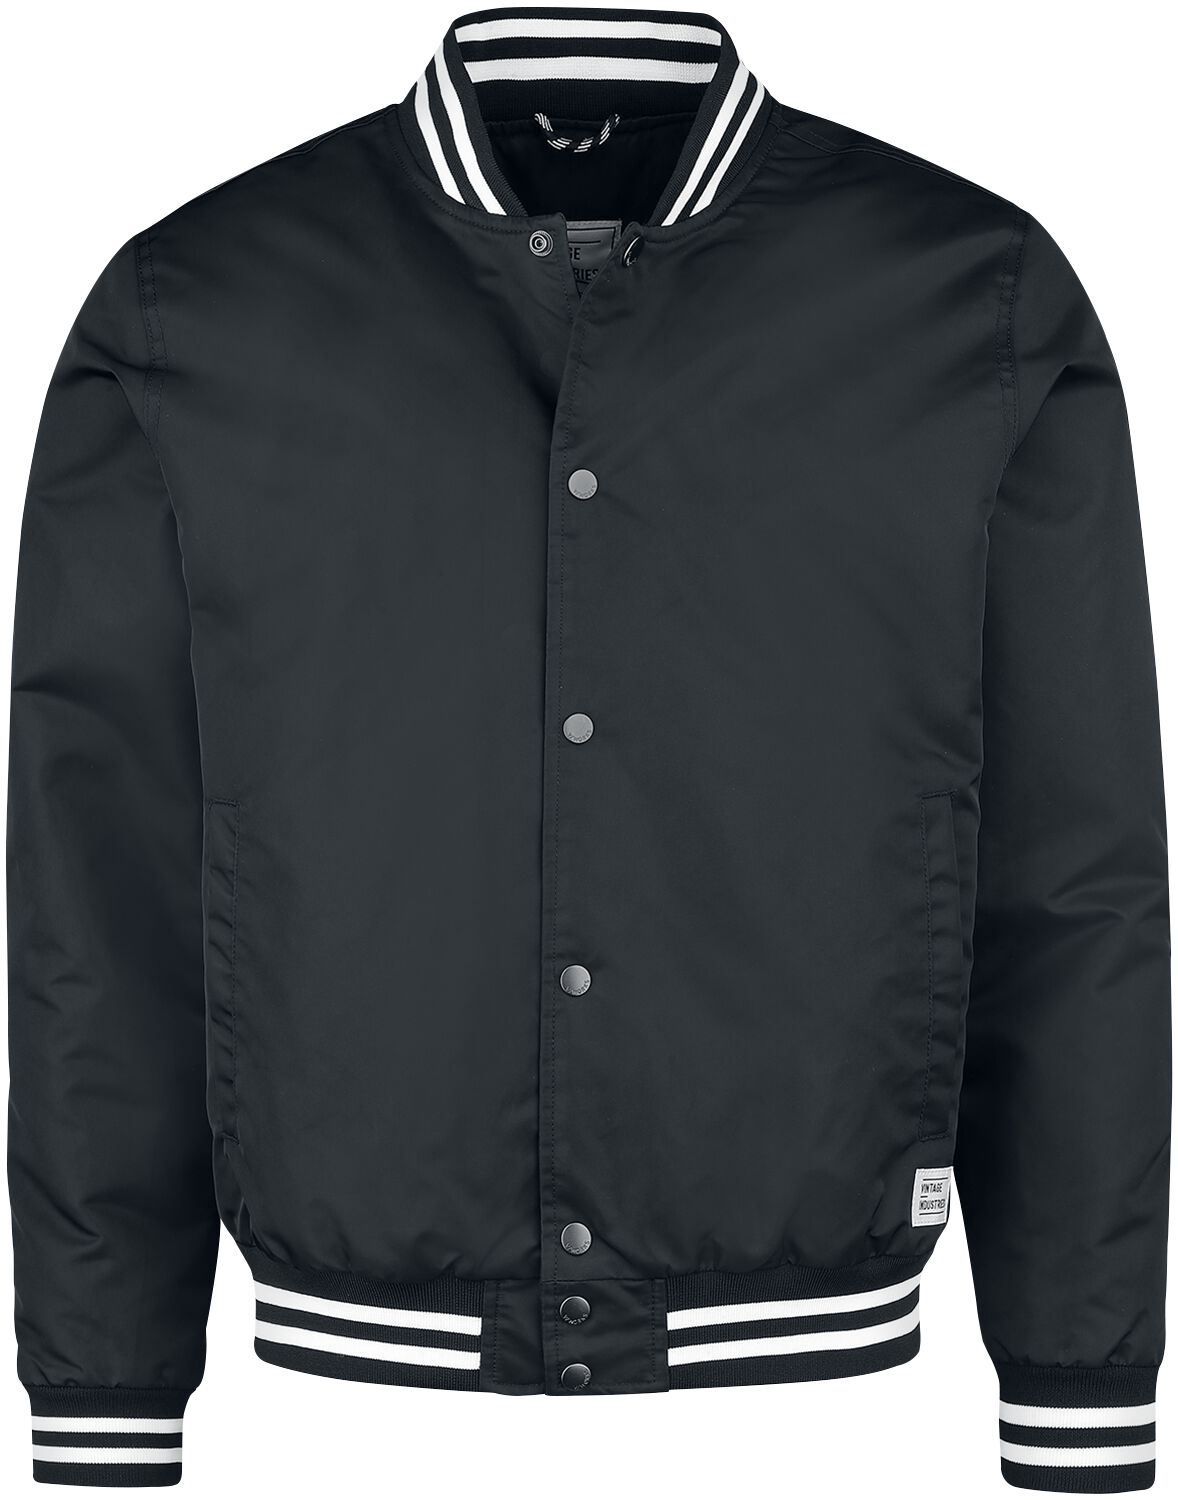 Vintage Industries Chapman Jacket Übergangsjacke schwarz in M